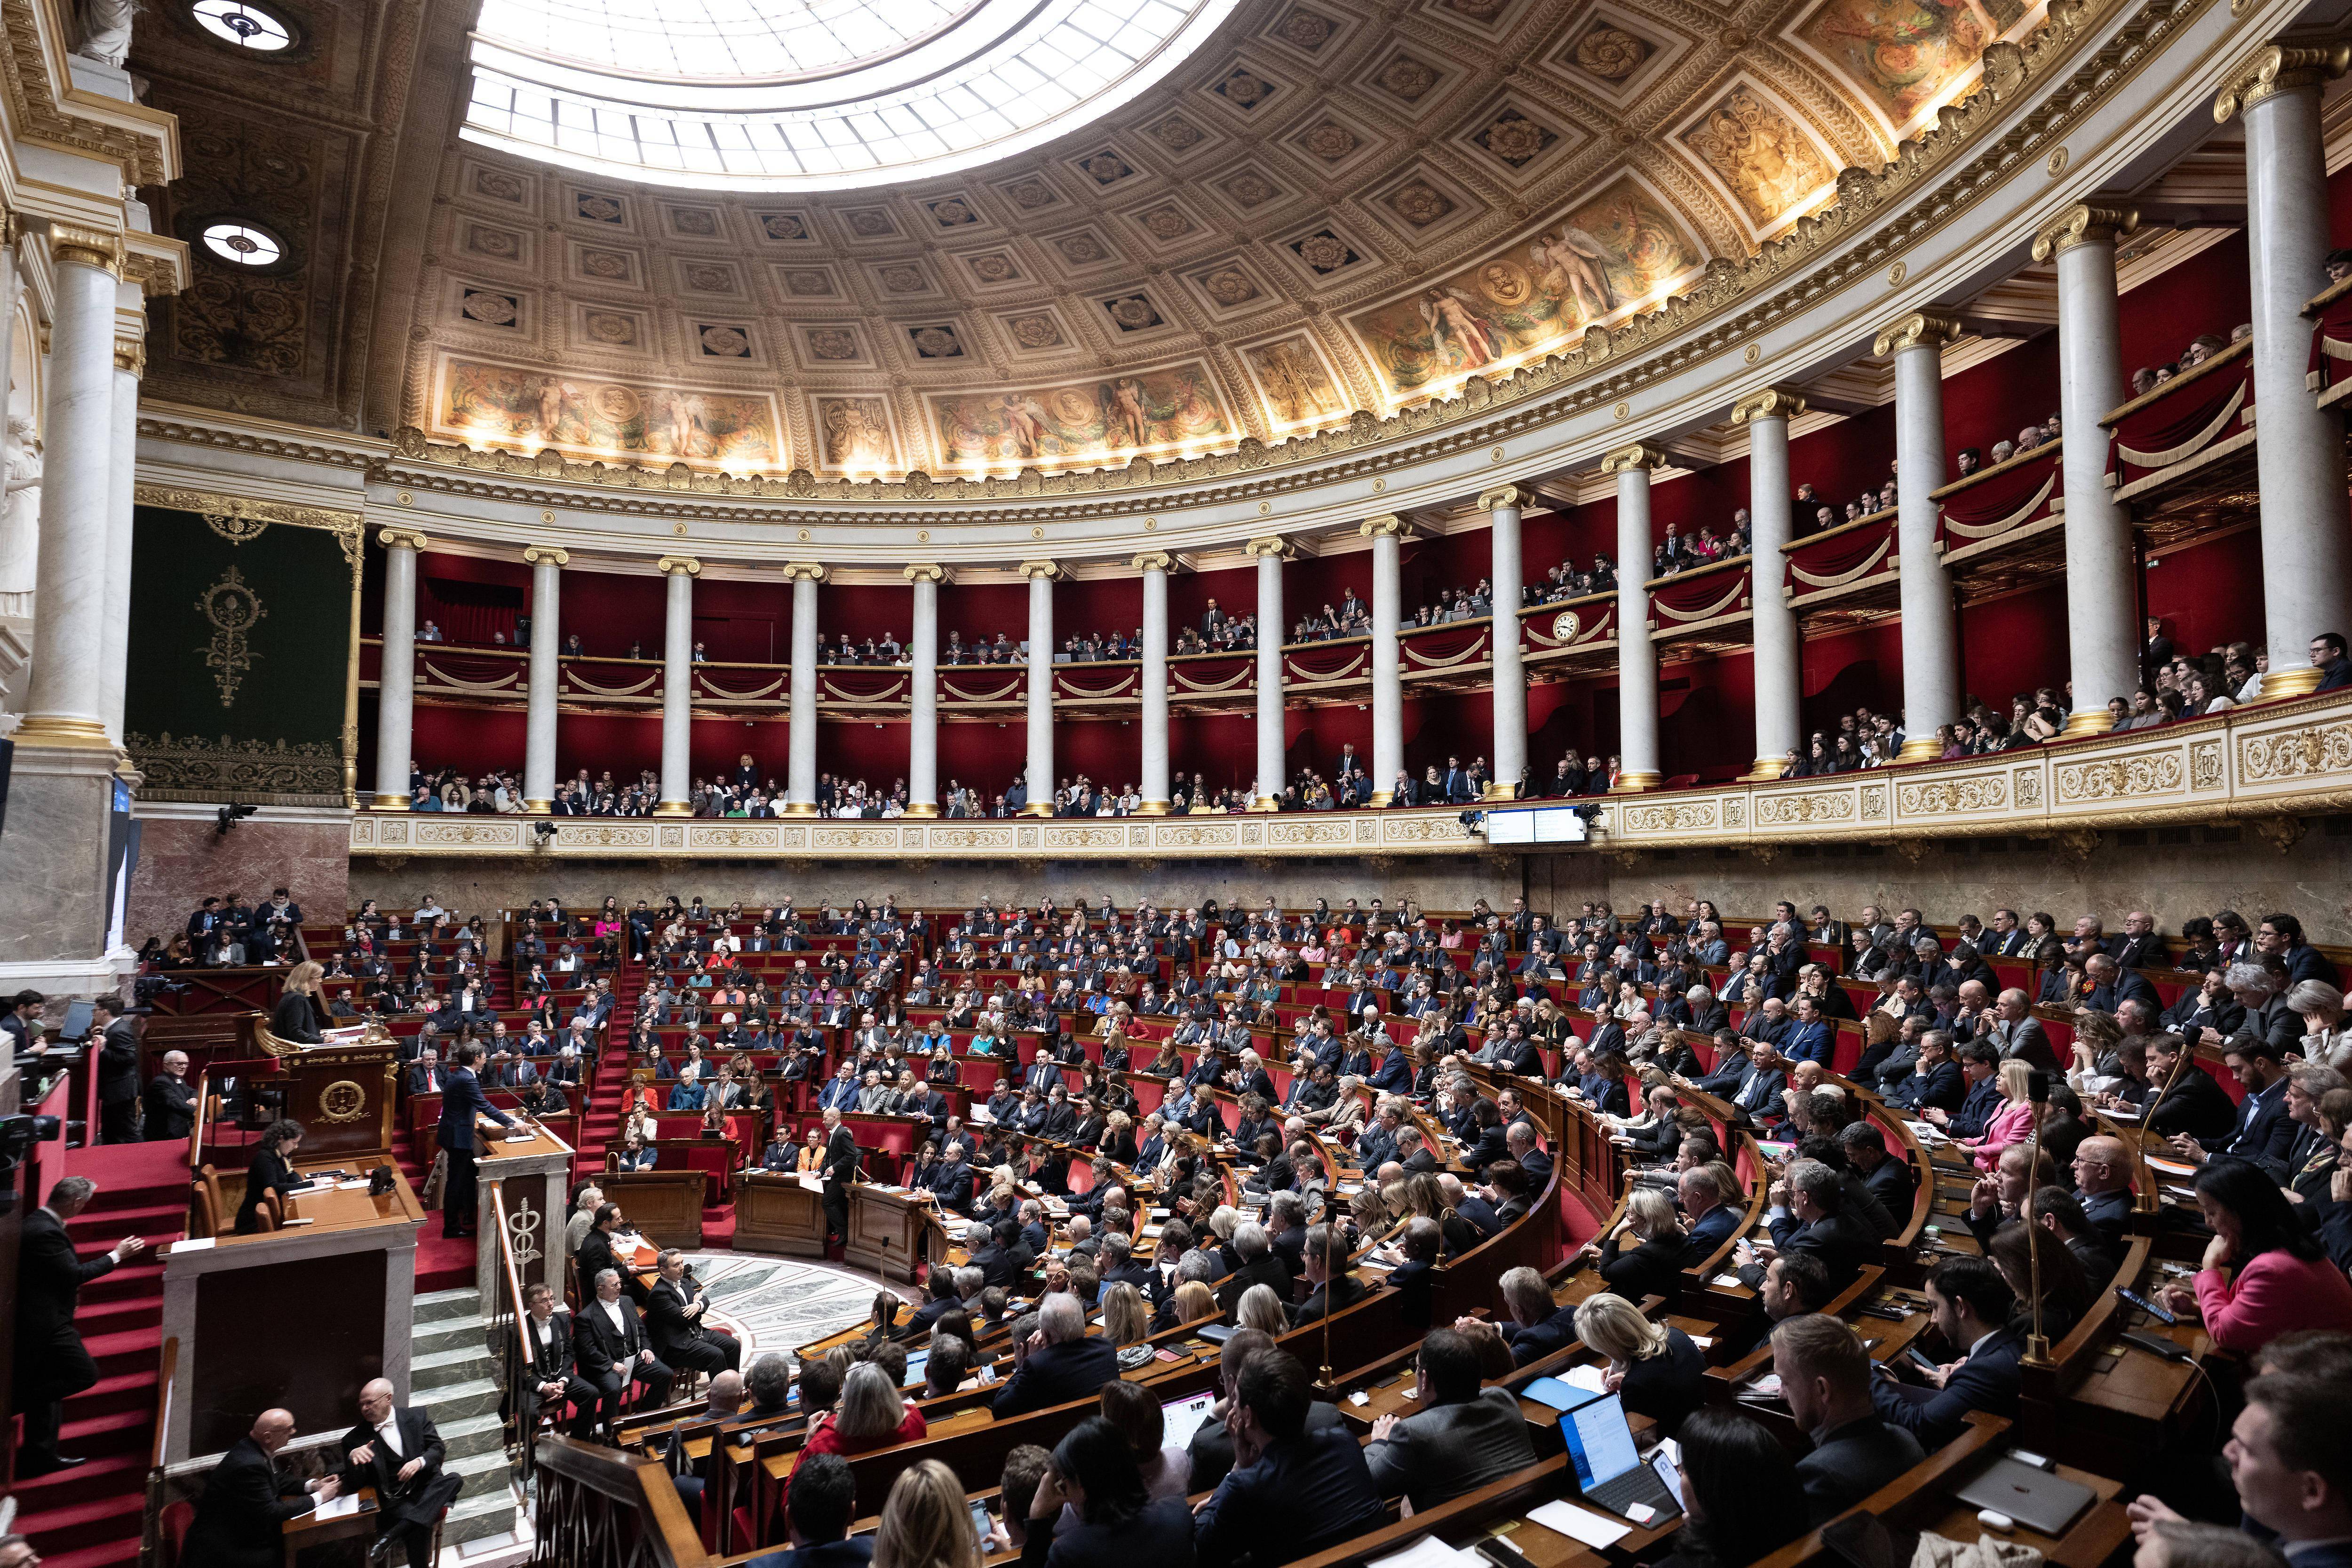 这是1月30日在法国巴黎拍摄的法国国民议会会议现场(新华社)